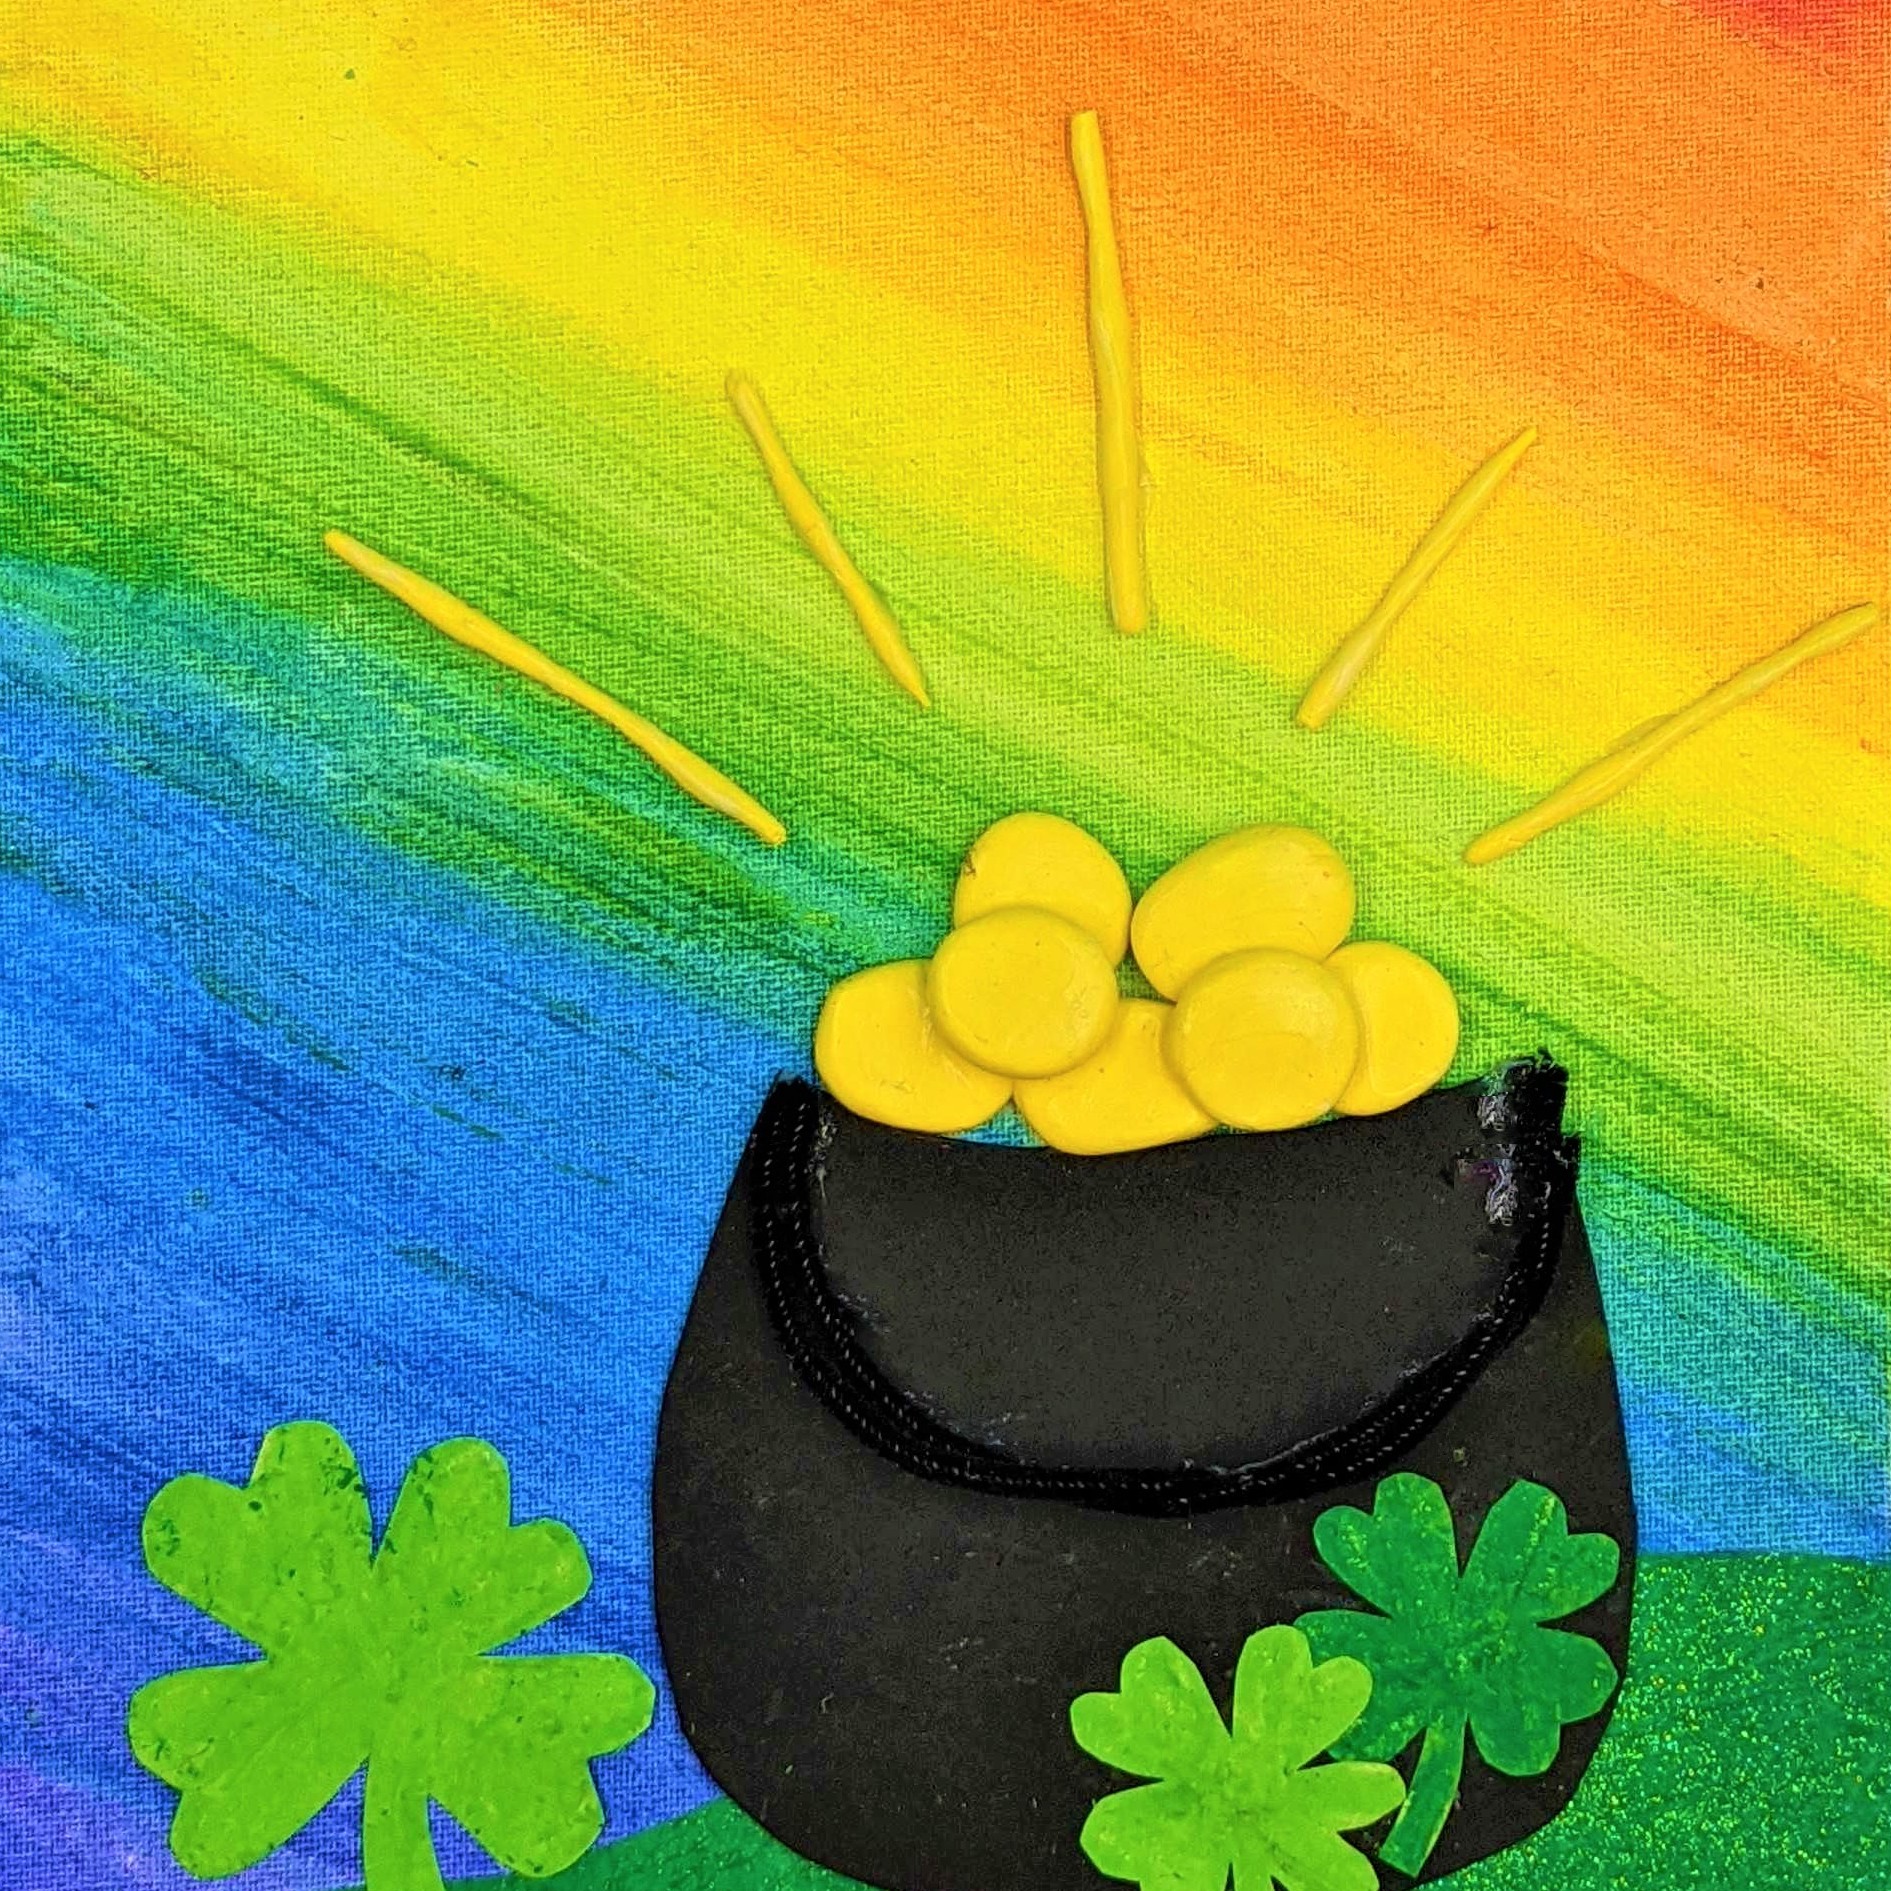 Kidcreate Studio, St. Patrick's Day Rainbow on Canvas Art Project